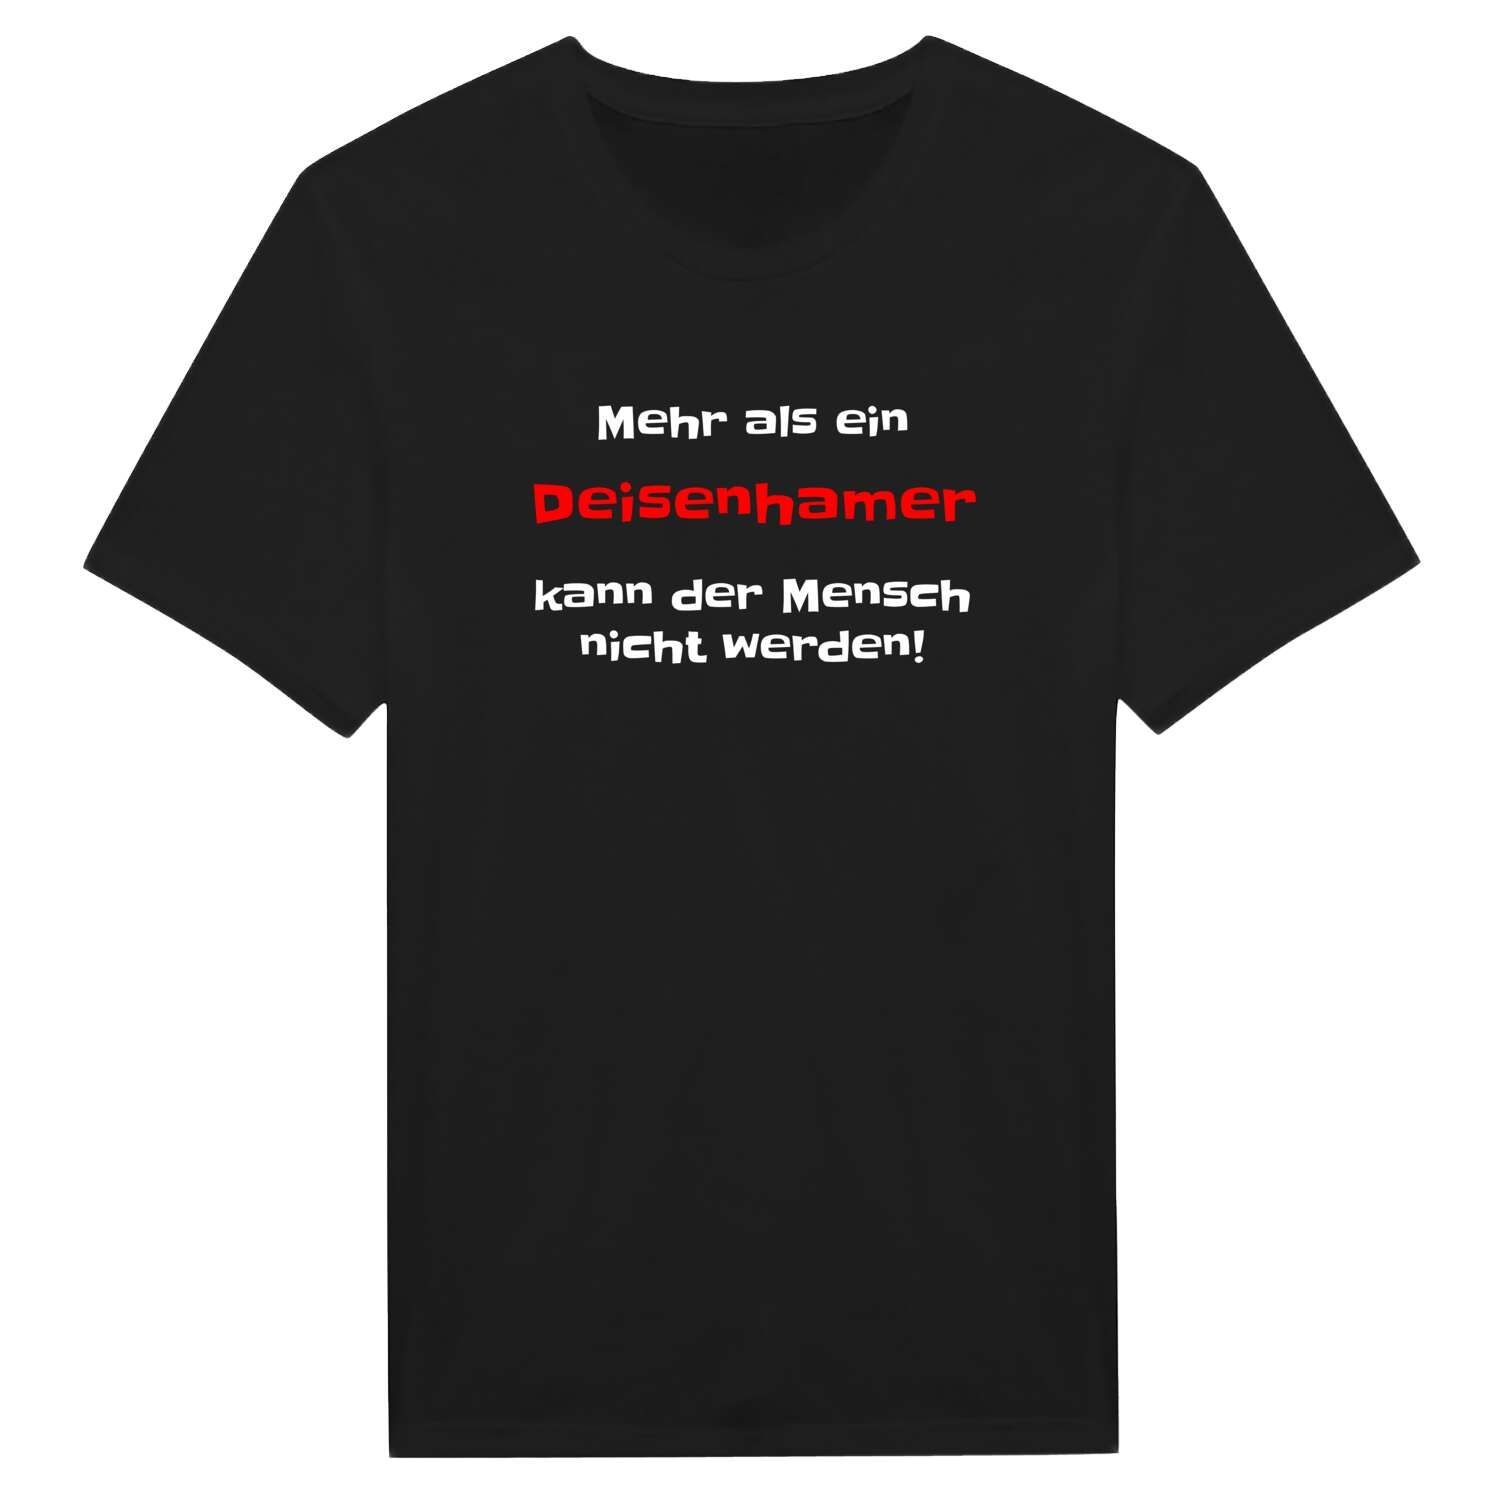 Deisenham T-Shirt »Mehr als ein«